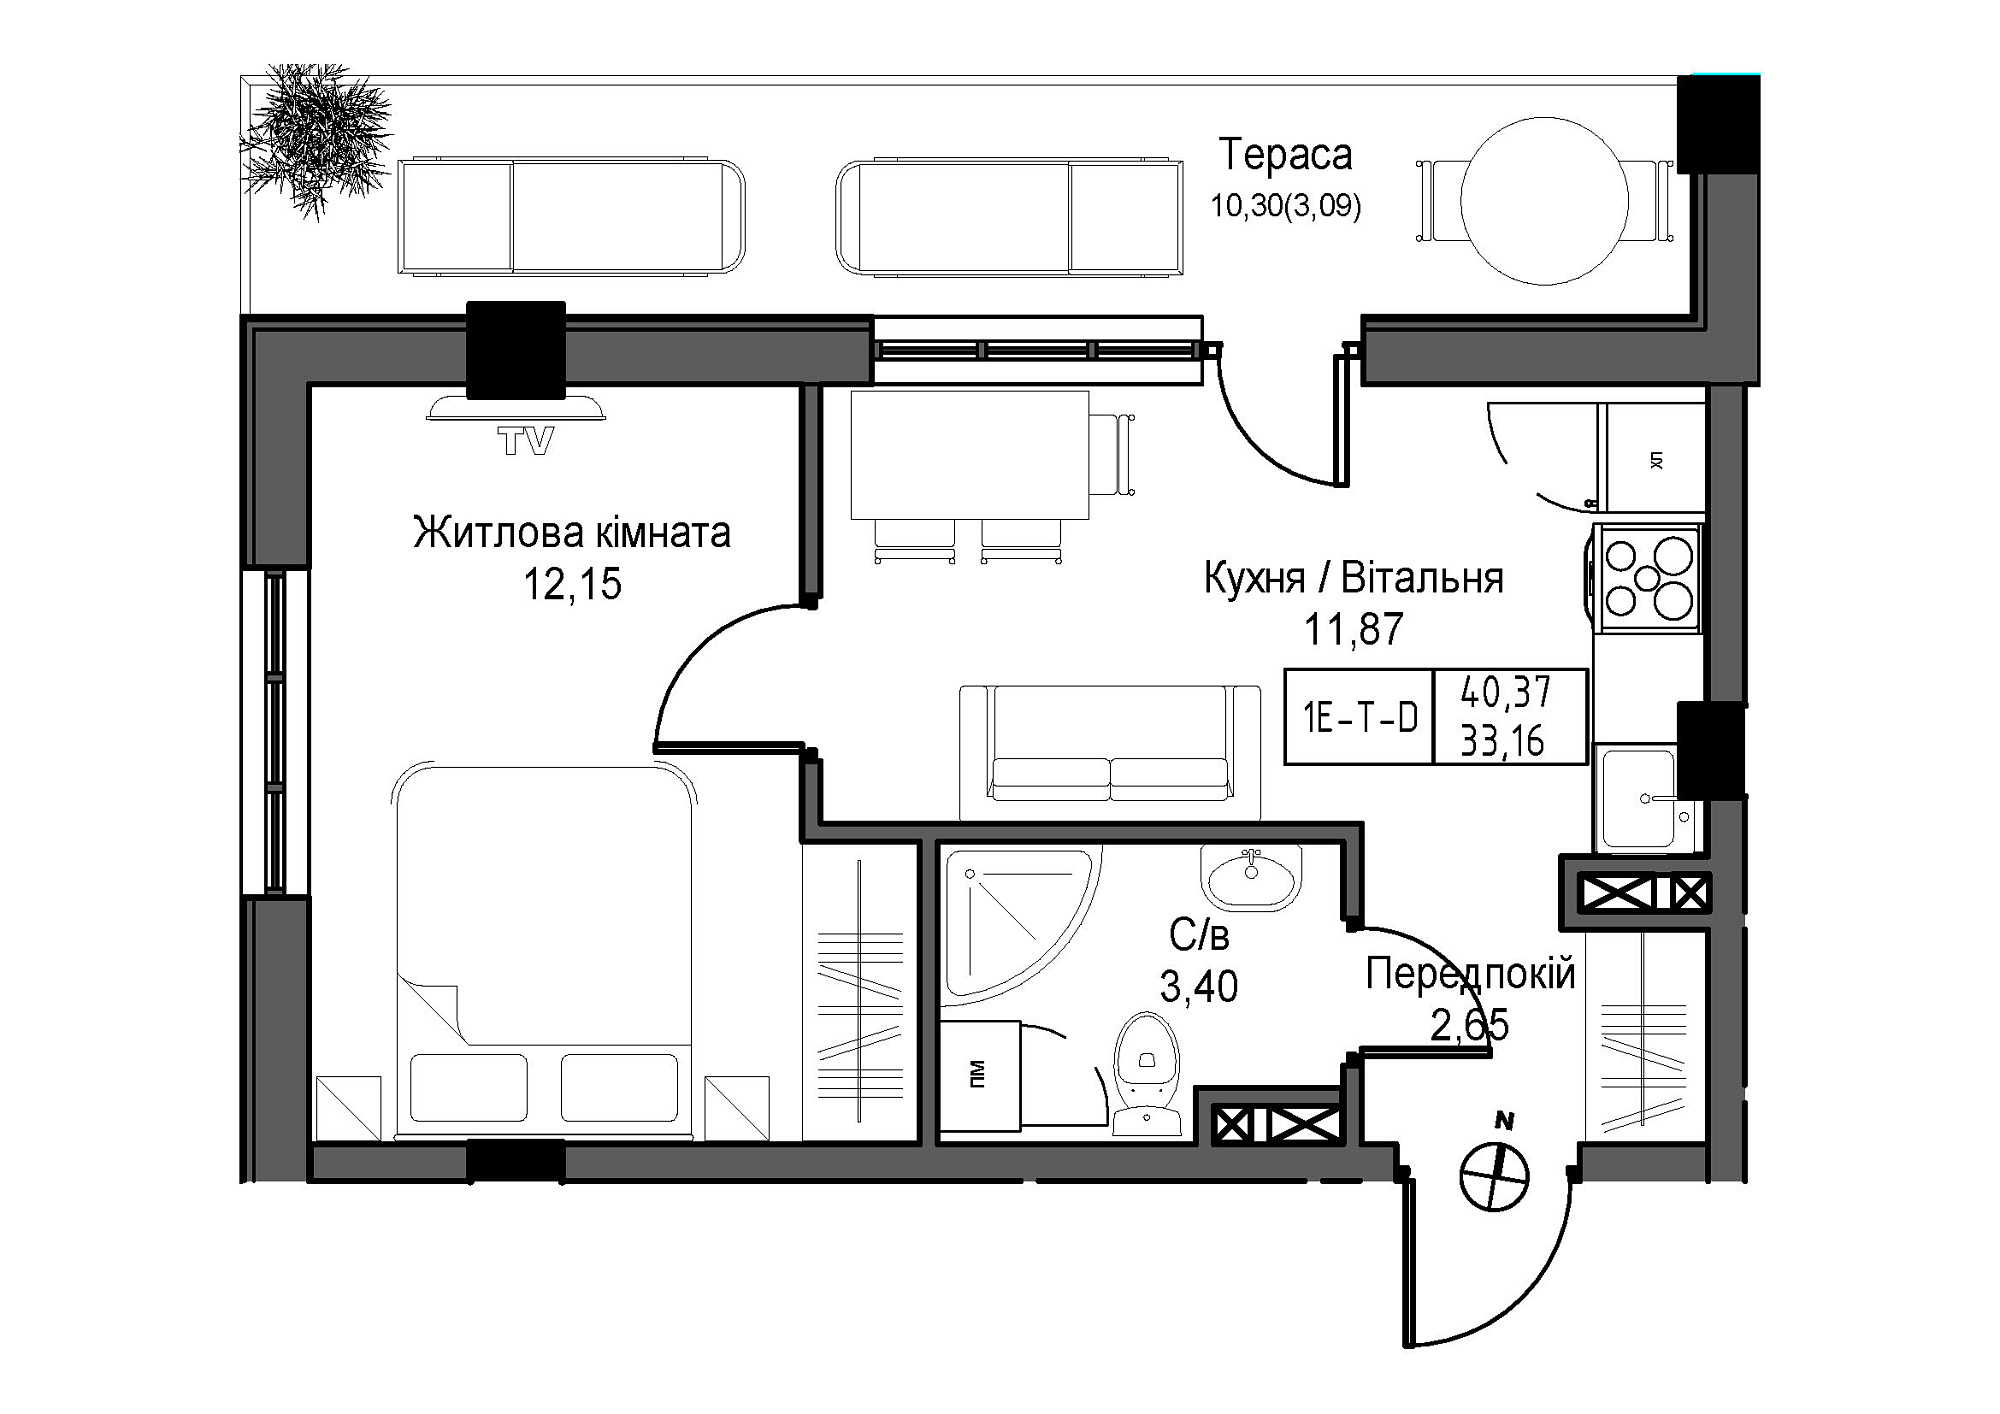 Планировка 1-к квартира площей 33.16м2, UM-007-04/0002.